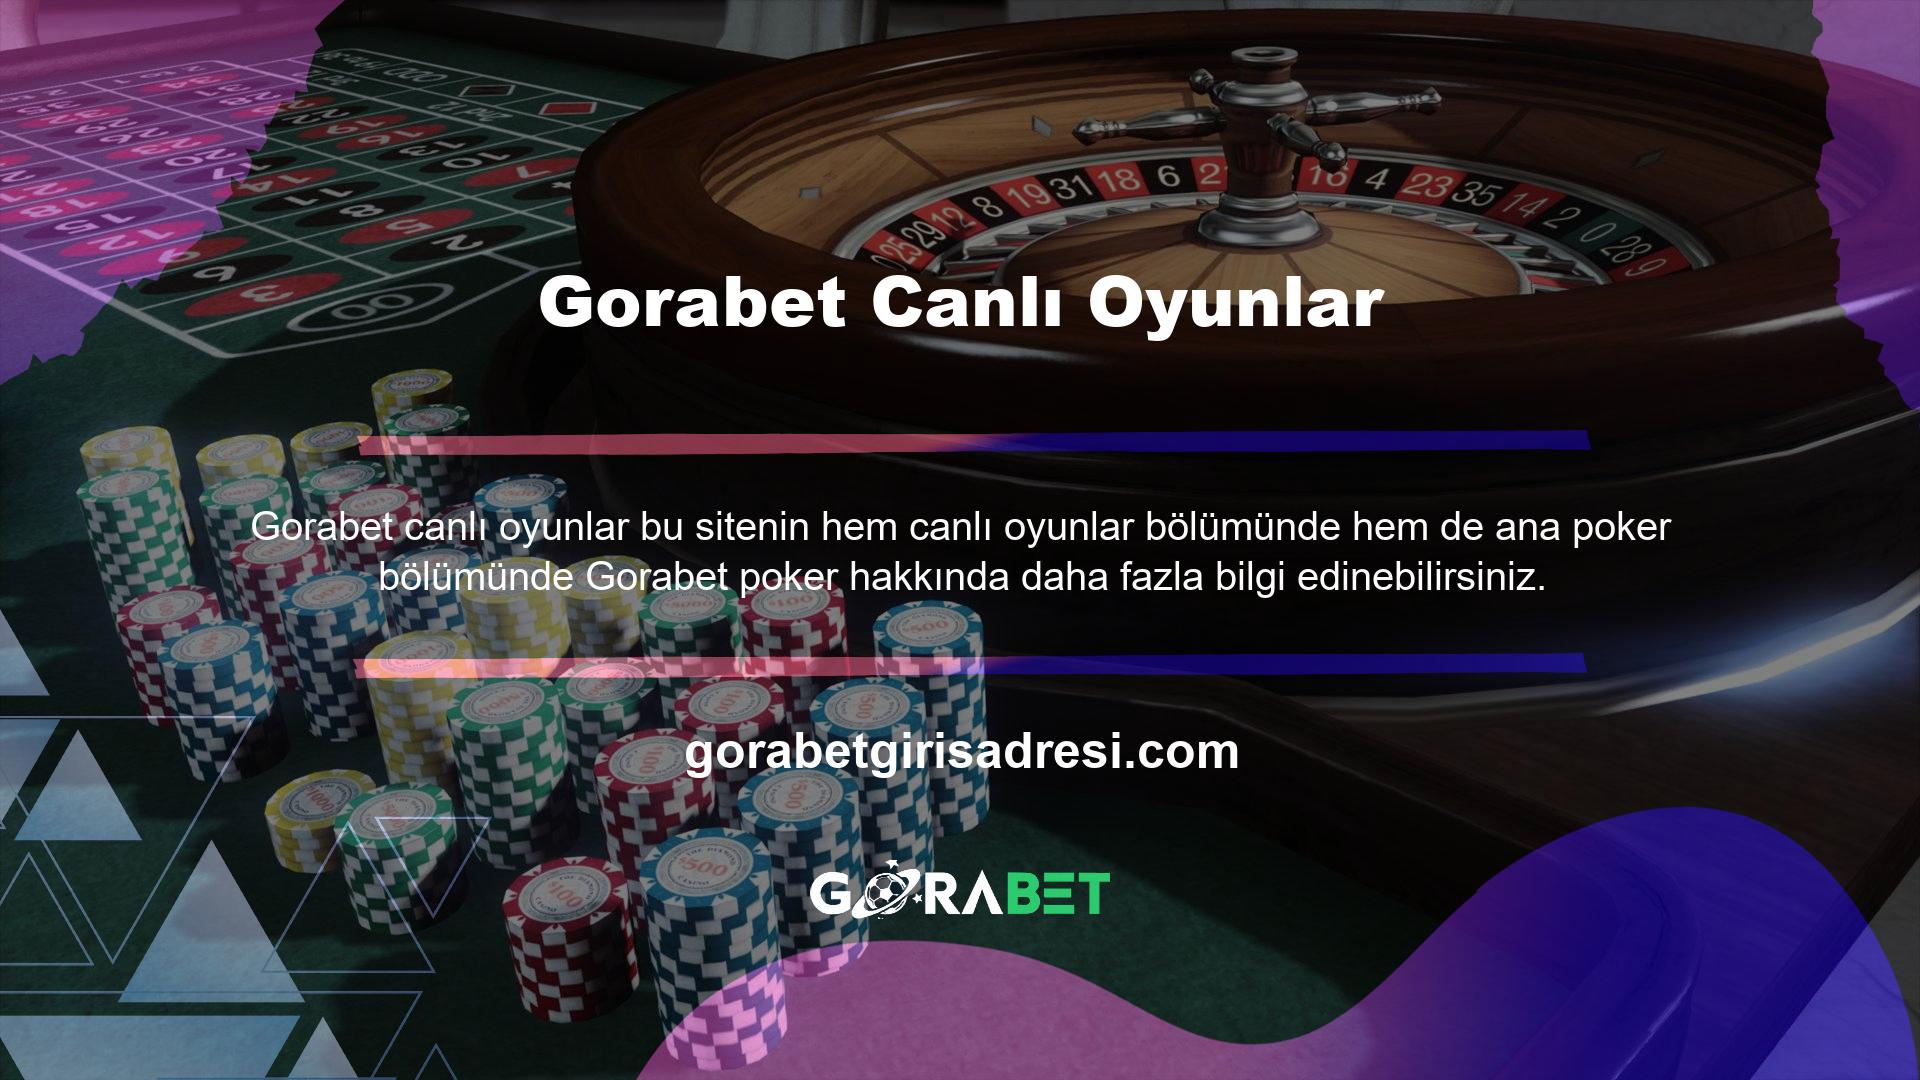 Ana poker bölümünde Türk Pokeri, Omaha Hold'em ve Texas Hold'em gibi oyun seçenekleri bulunmaktadır